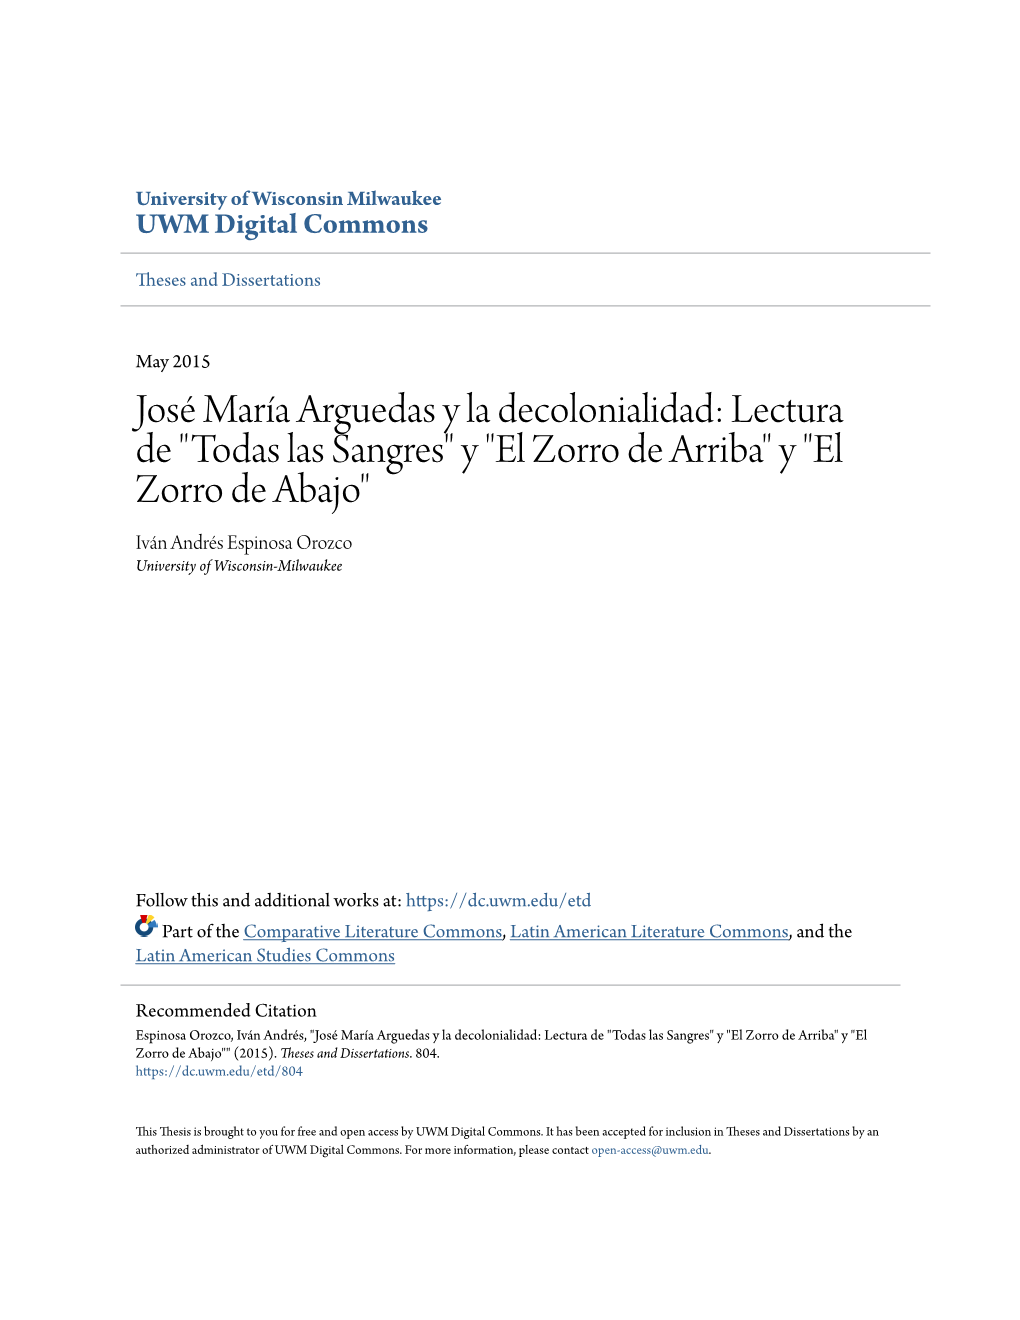 José María Arguedas Y La Decolonialidad: Lectura De "Todas Las Sangres" Y "El Zorro De Arriba" Y